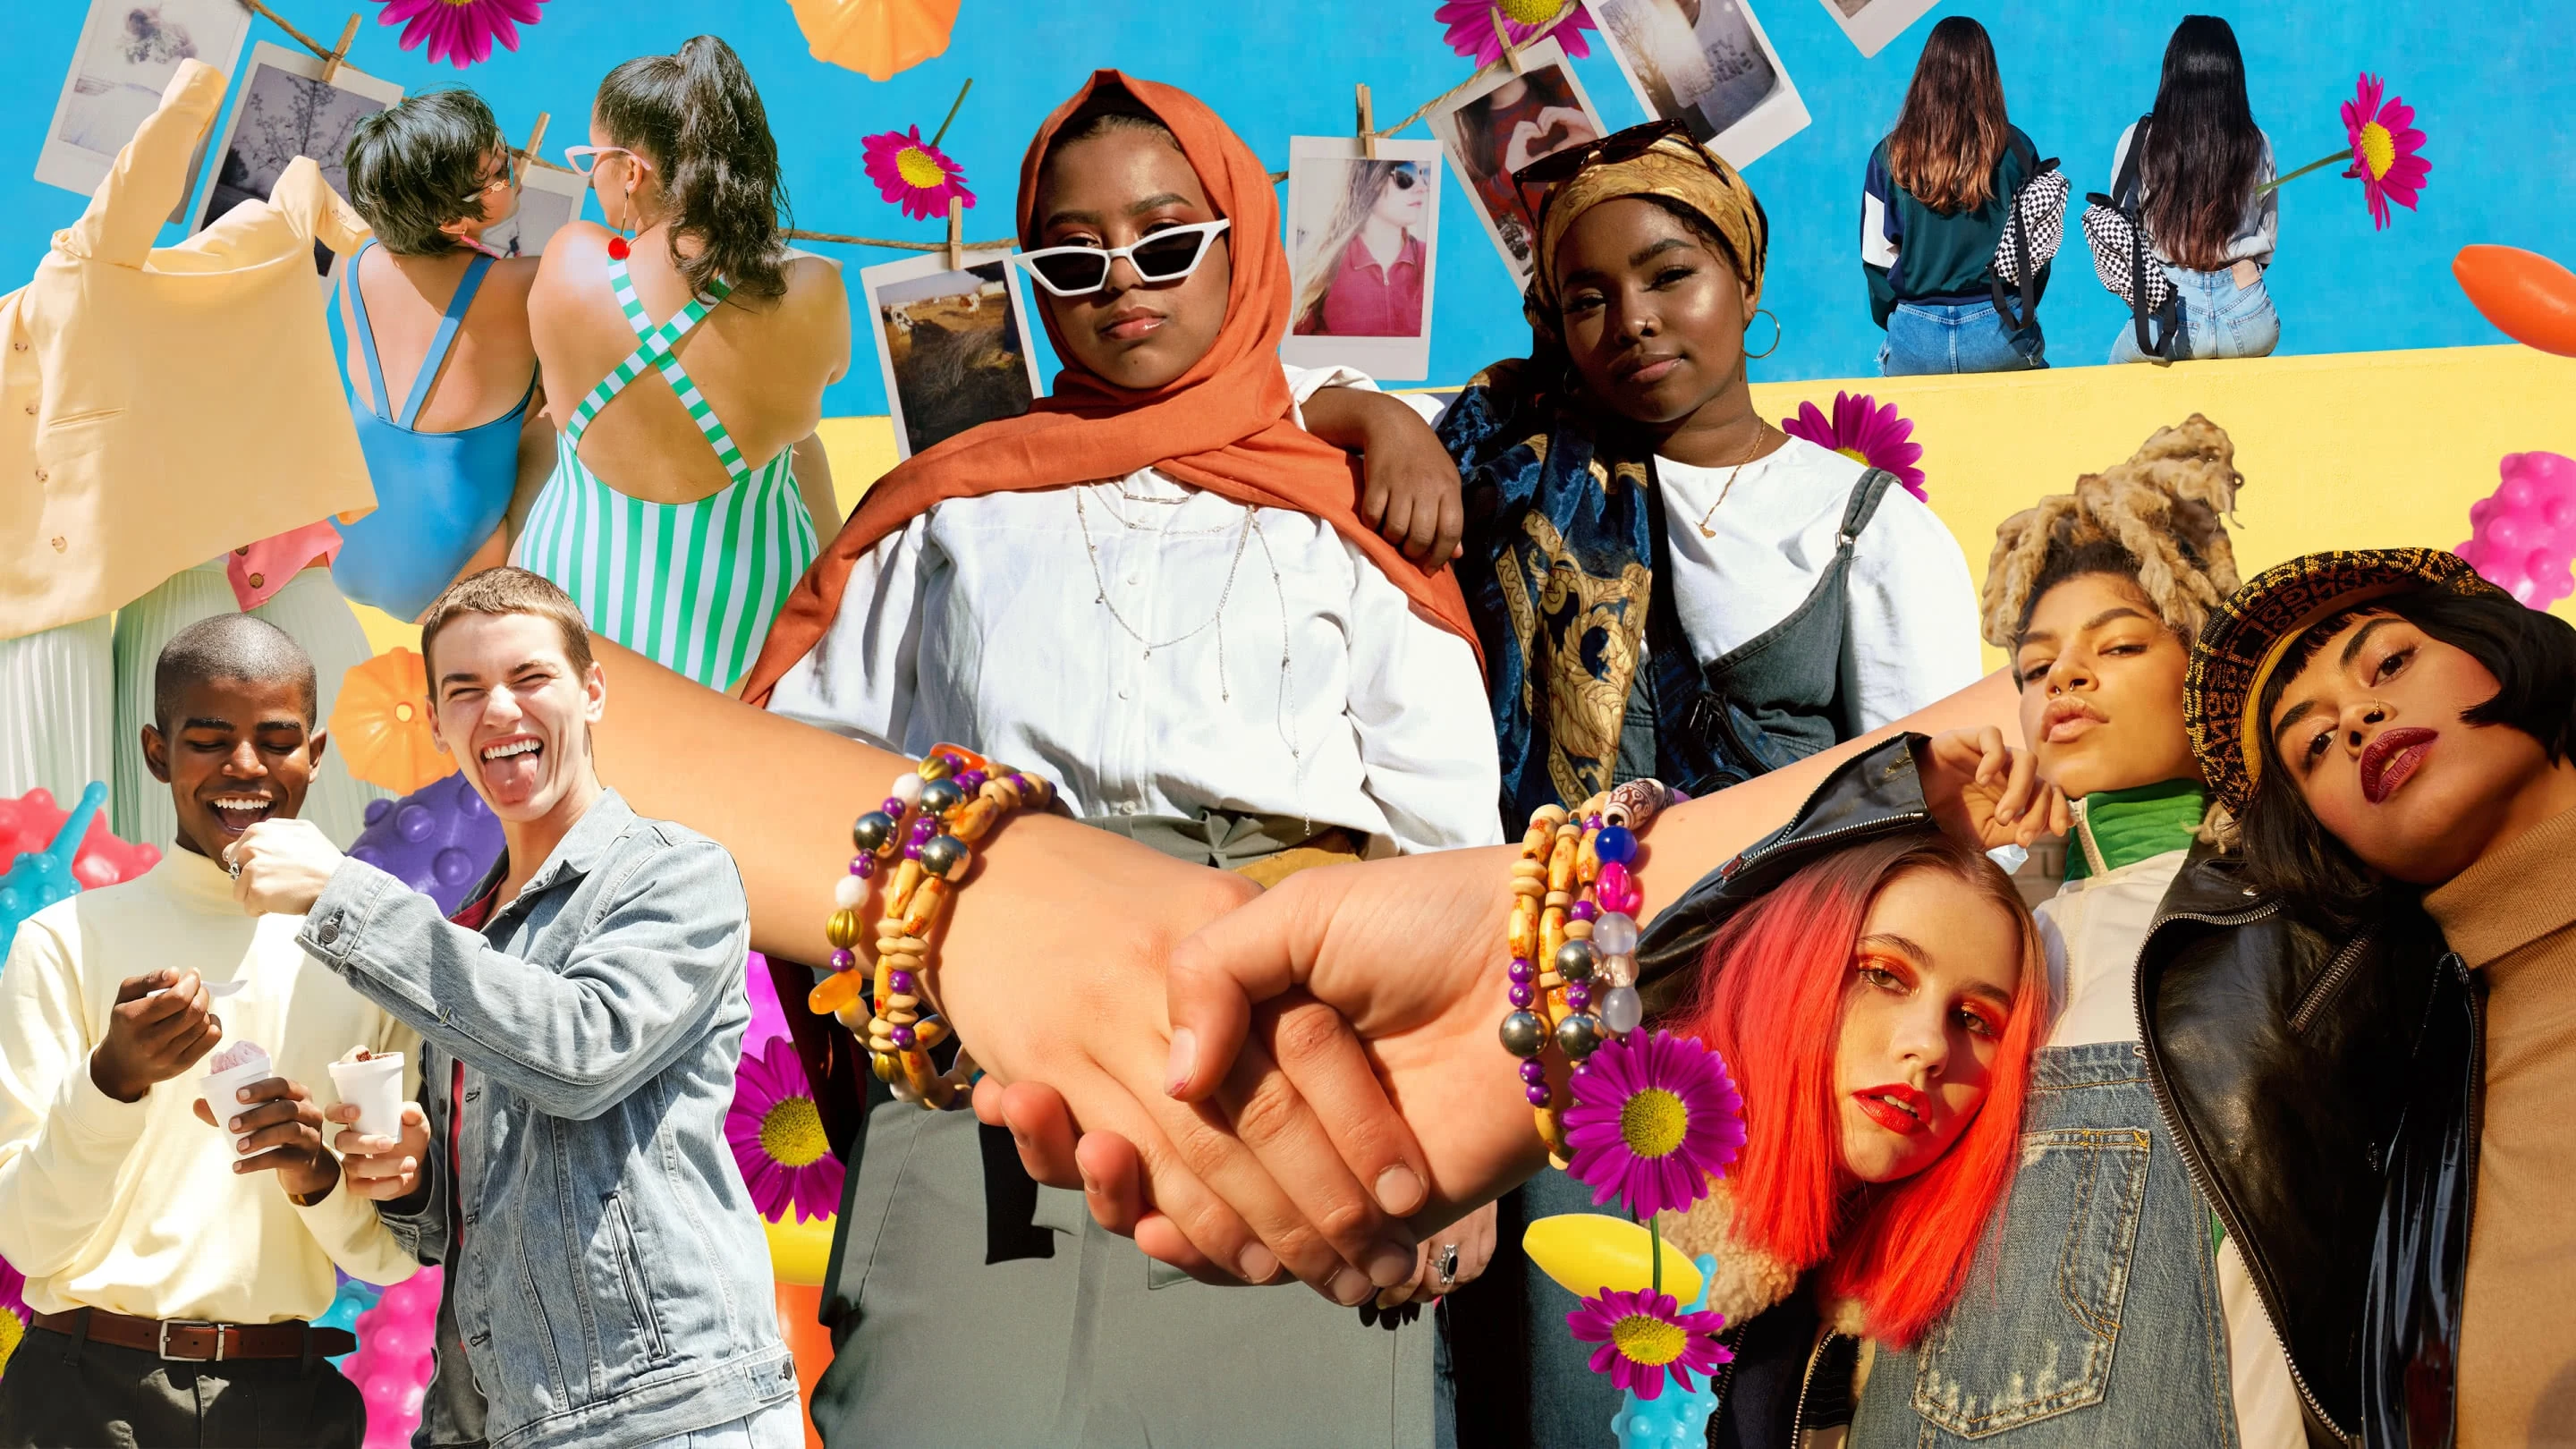 Eine bunte Collage mit Freundinnen und Freunden verschiedener Hautfarben und Herkunft. In der Mitte ist ein Handschlag zu sehen, im Hintergrund farbenfrohe Blumen und Formen.